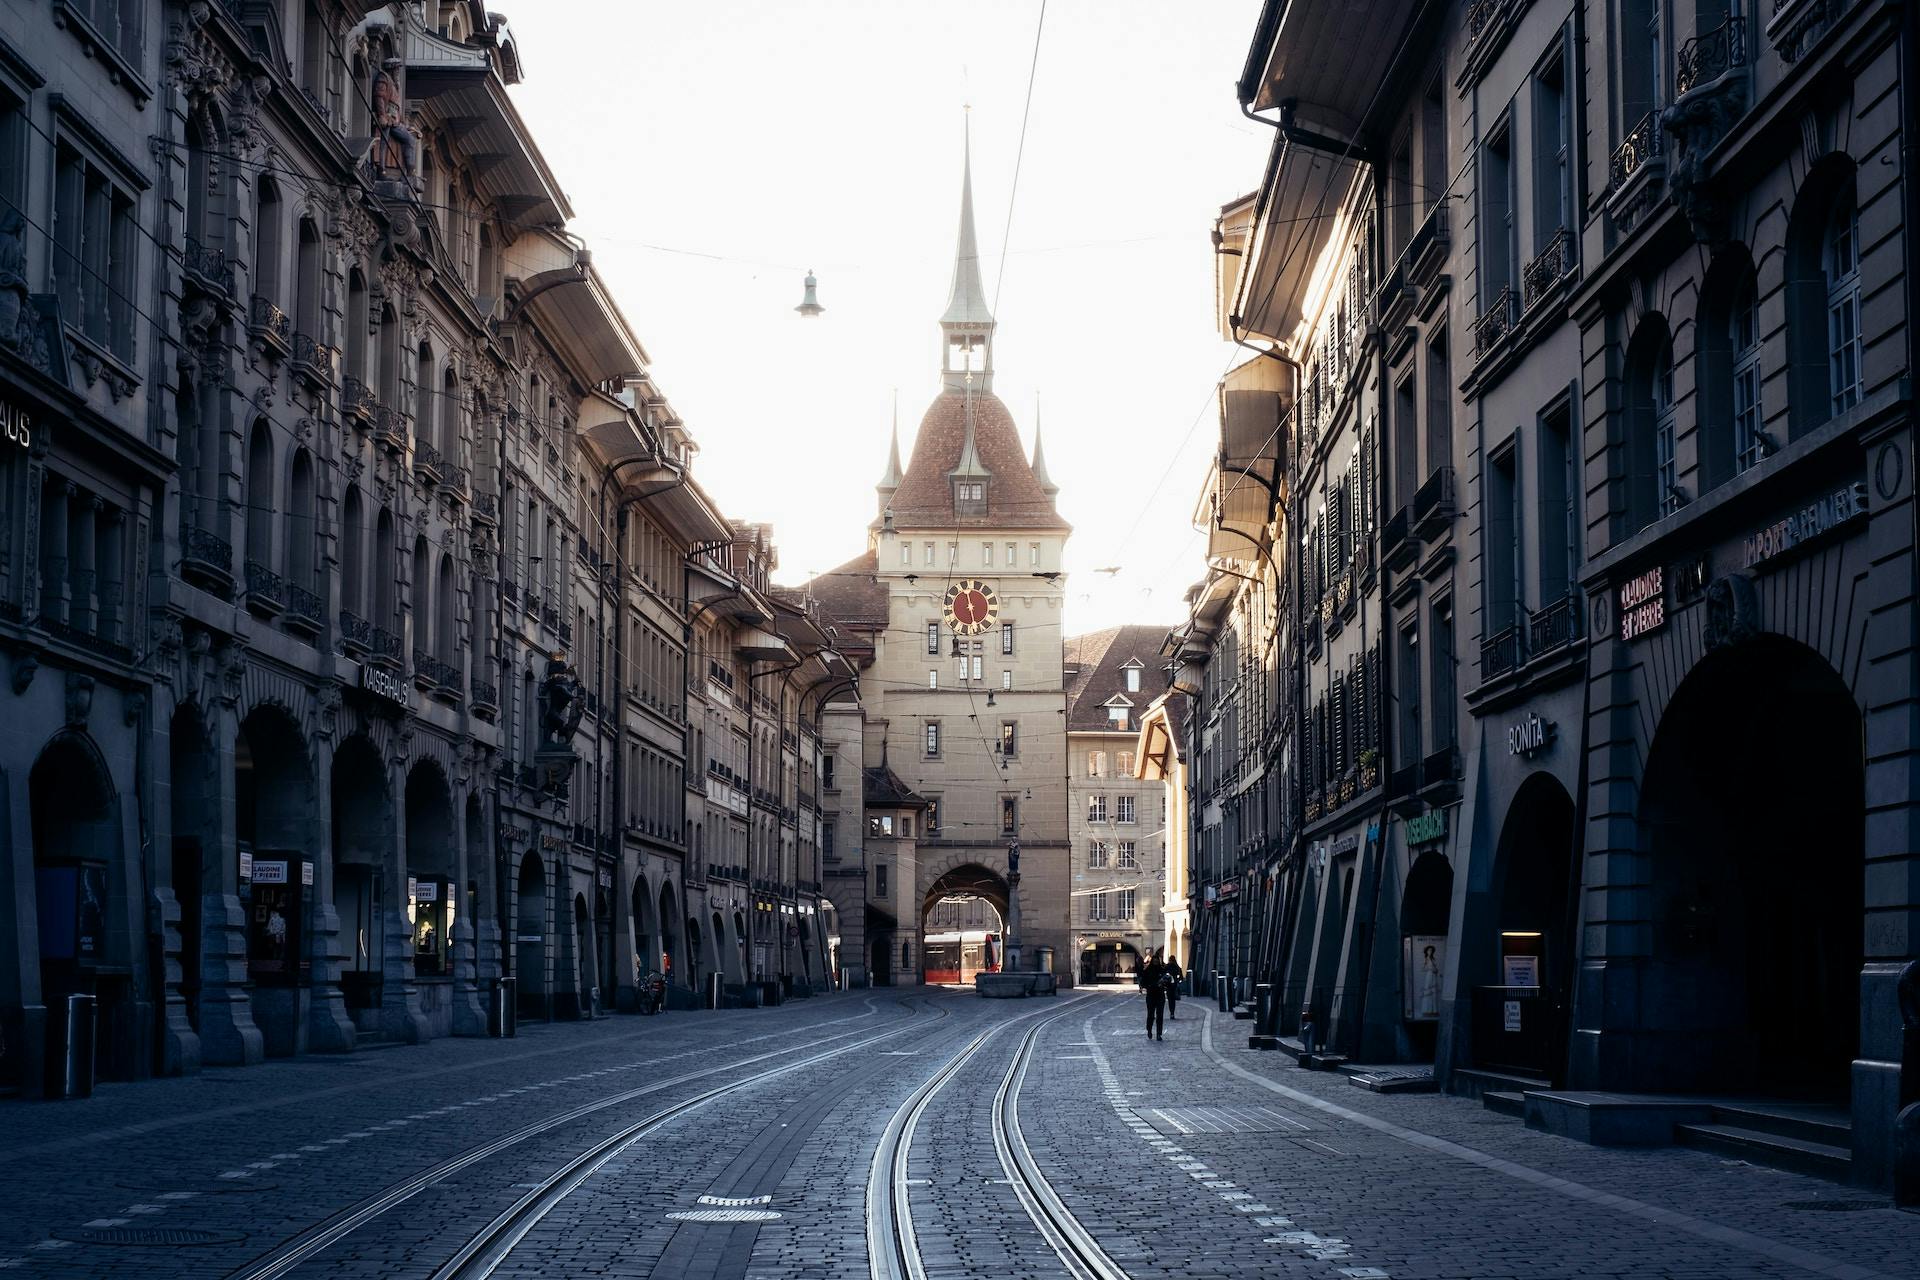 Strasse in Bern mit vielen Läden und der Zeitglocke